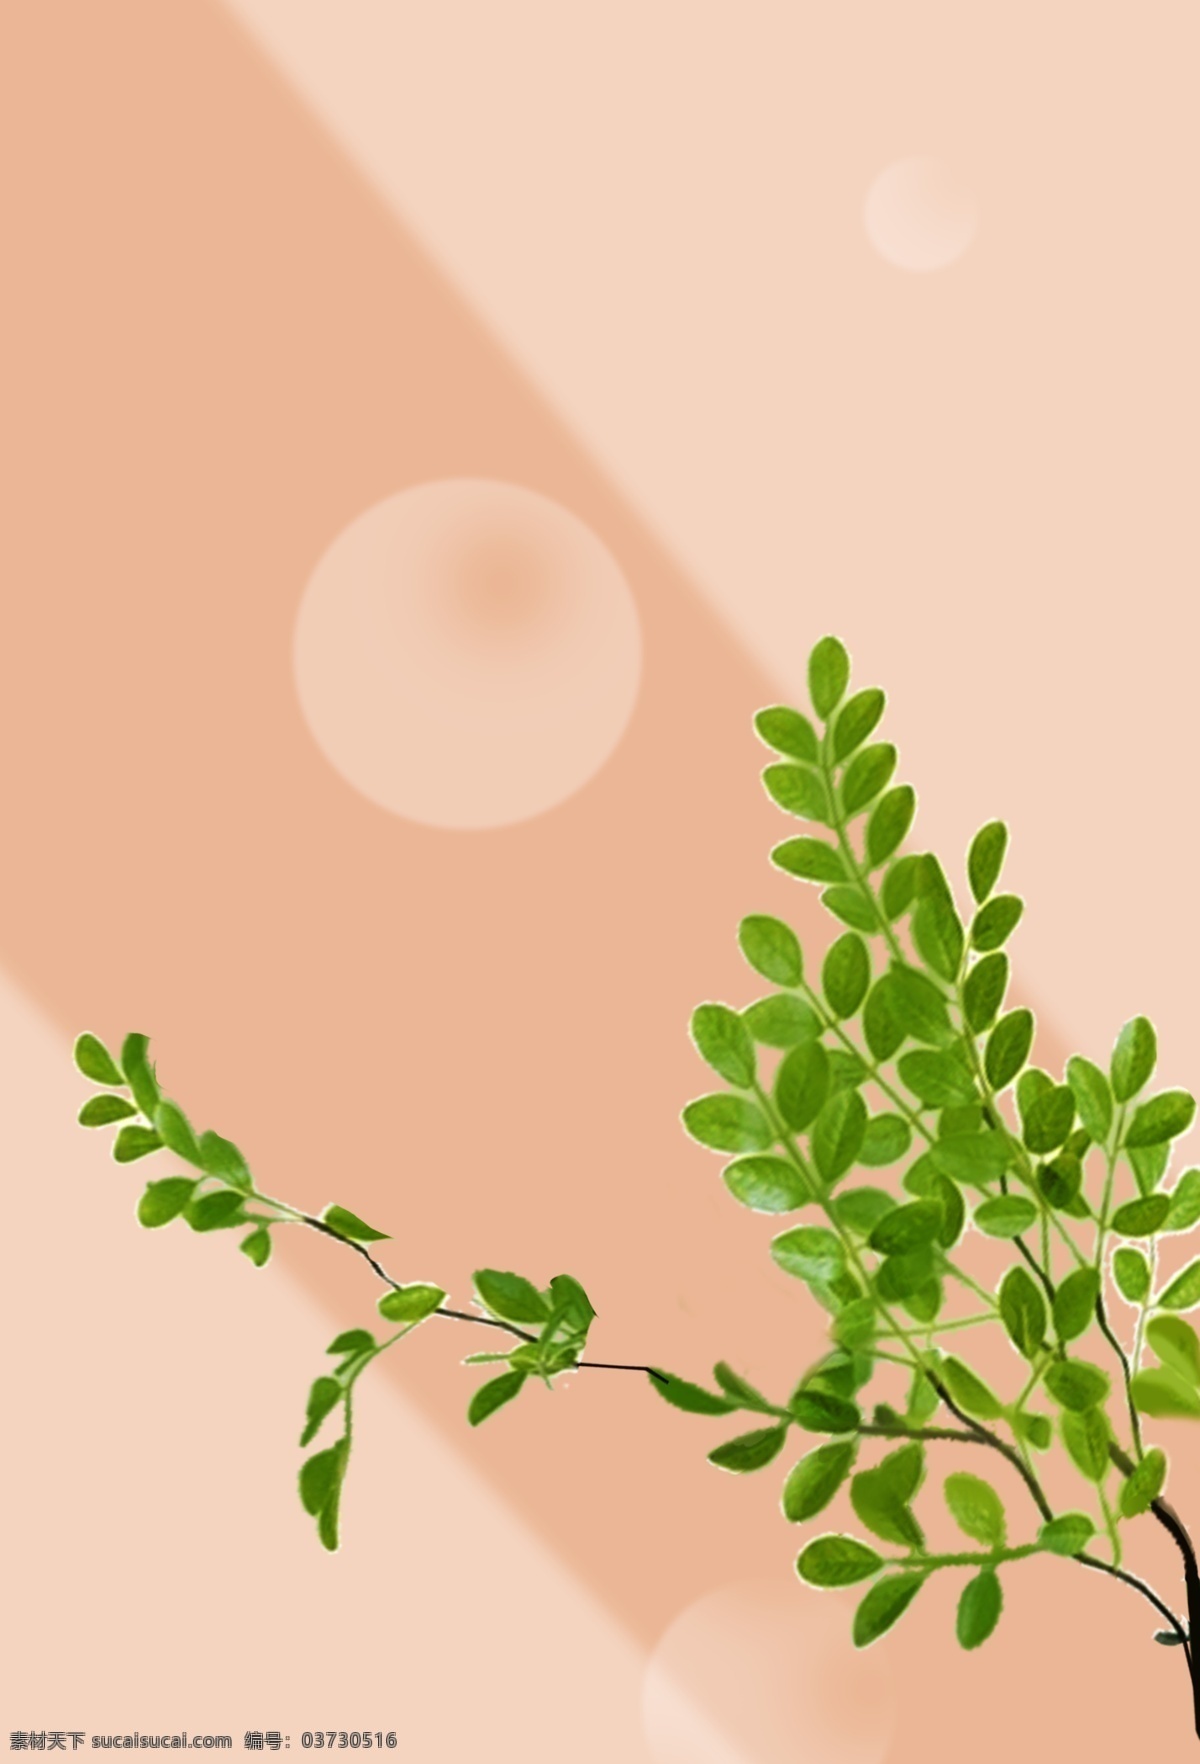 唯美 手绘 绿色植物 插画 背景 森系 小清新背景 植物背景 植物花卉 水彩背景 通用背景